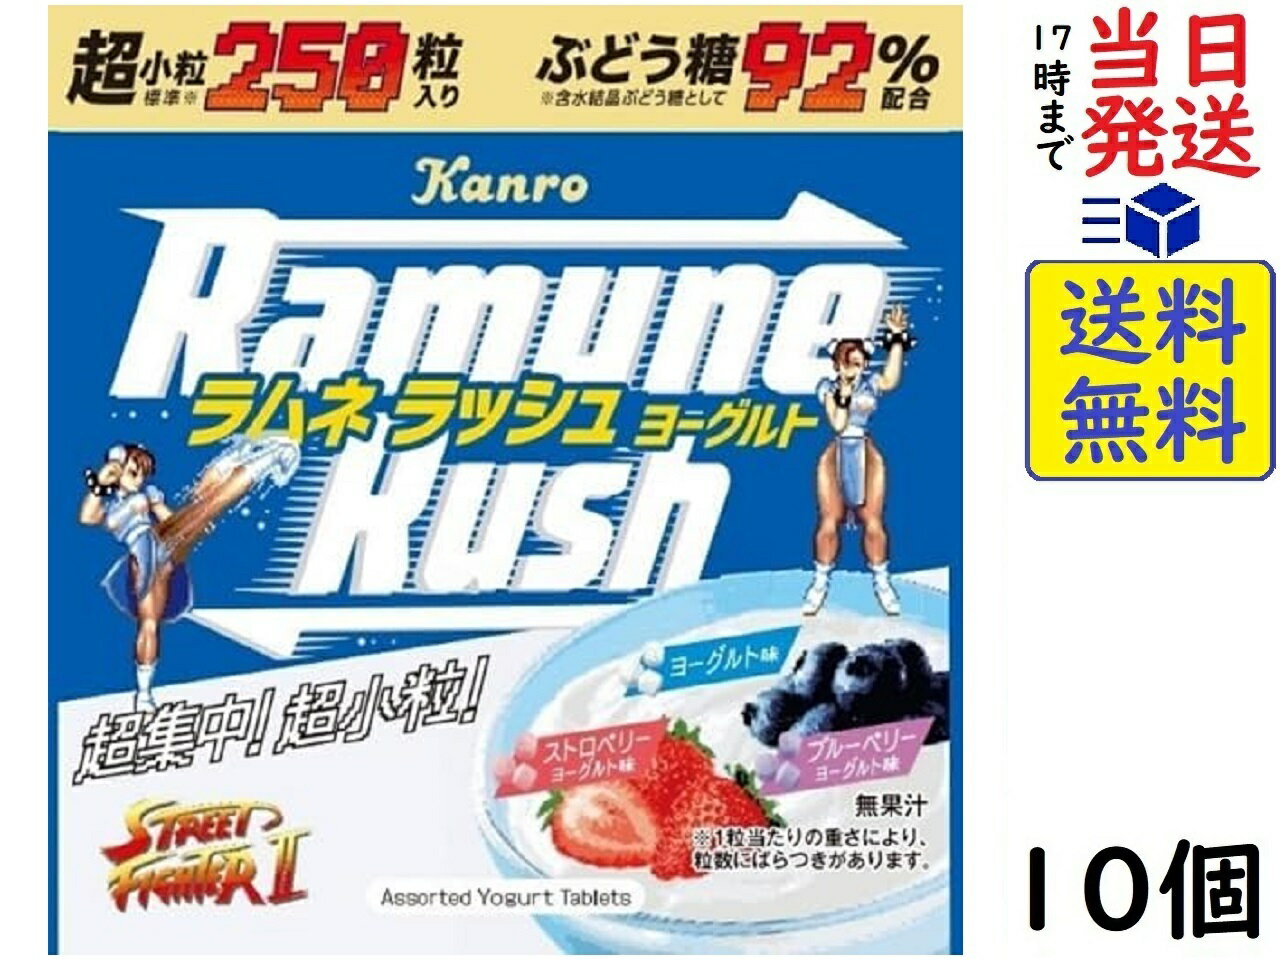 正規代理店 ラムネラッシュ ×10個<br>賞味期限2024 50g ヨーグルト 03 カンロ 駄菓子